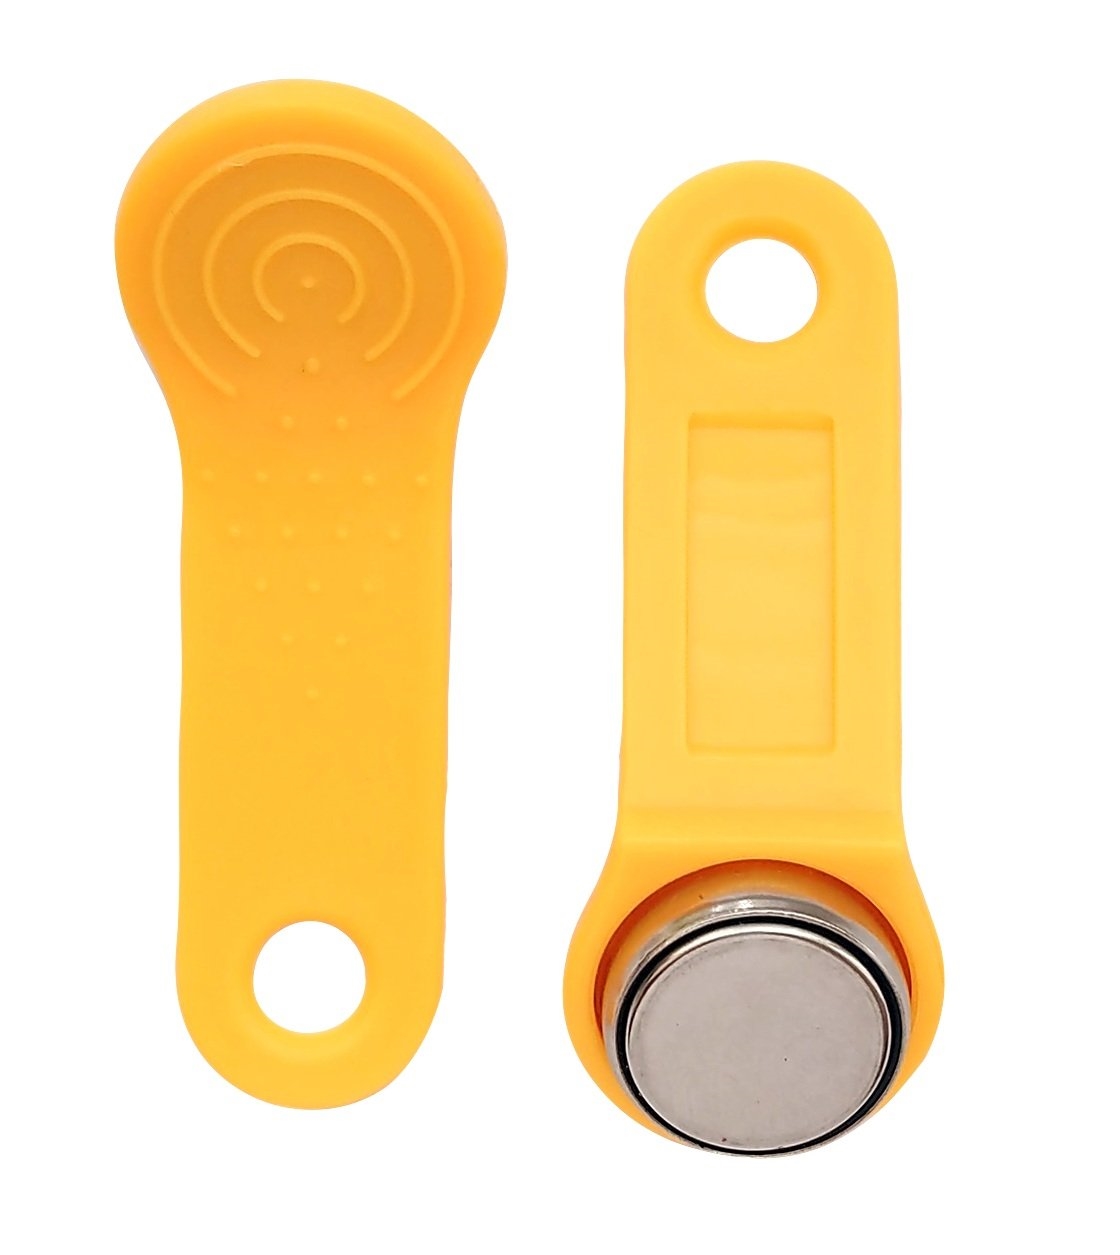 RW 1990 SLINEX (желтый): Ключ электронный Touch Memory с держателем